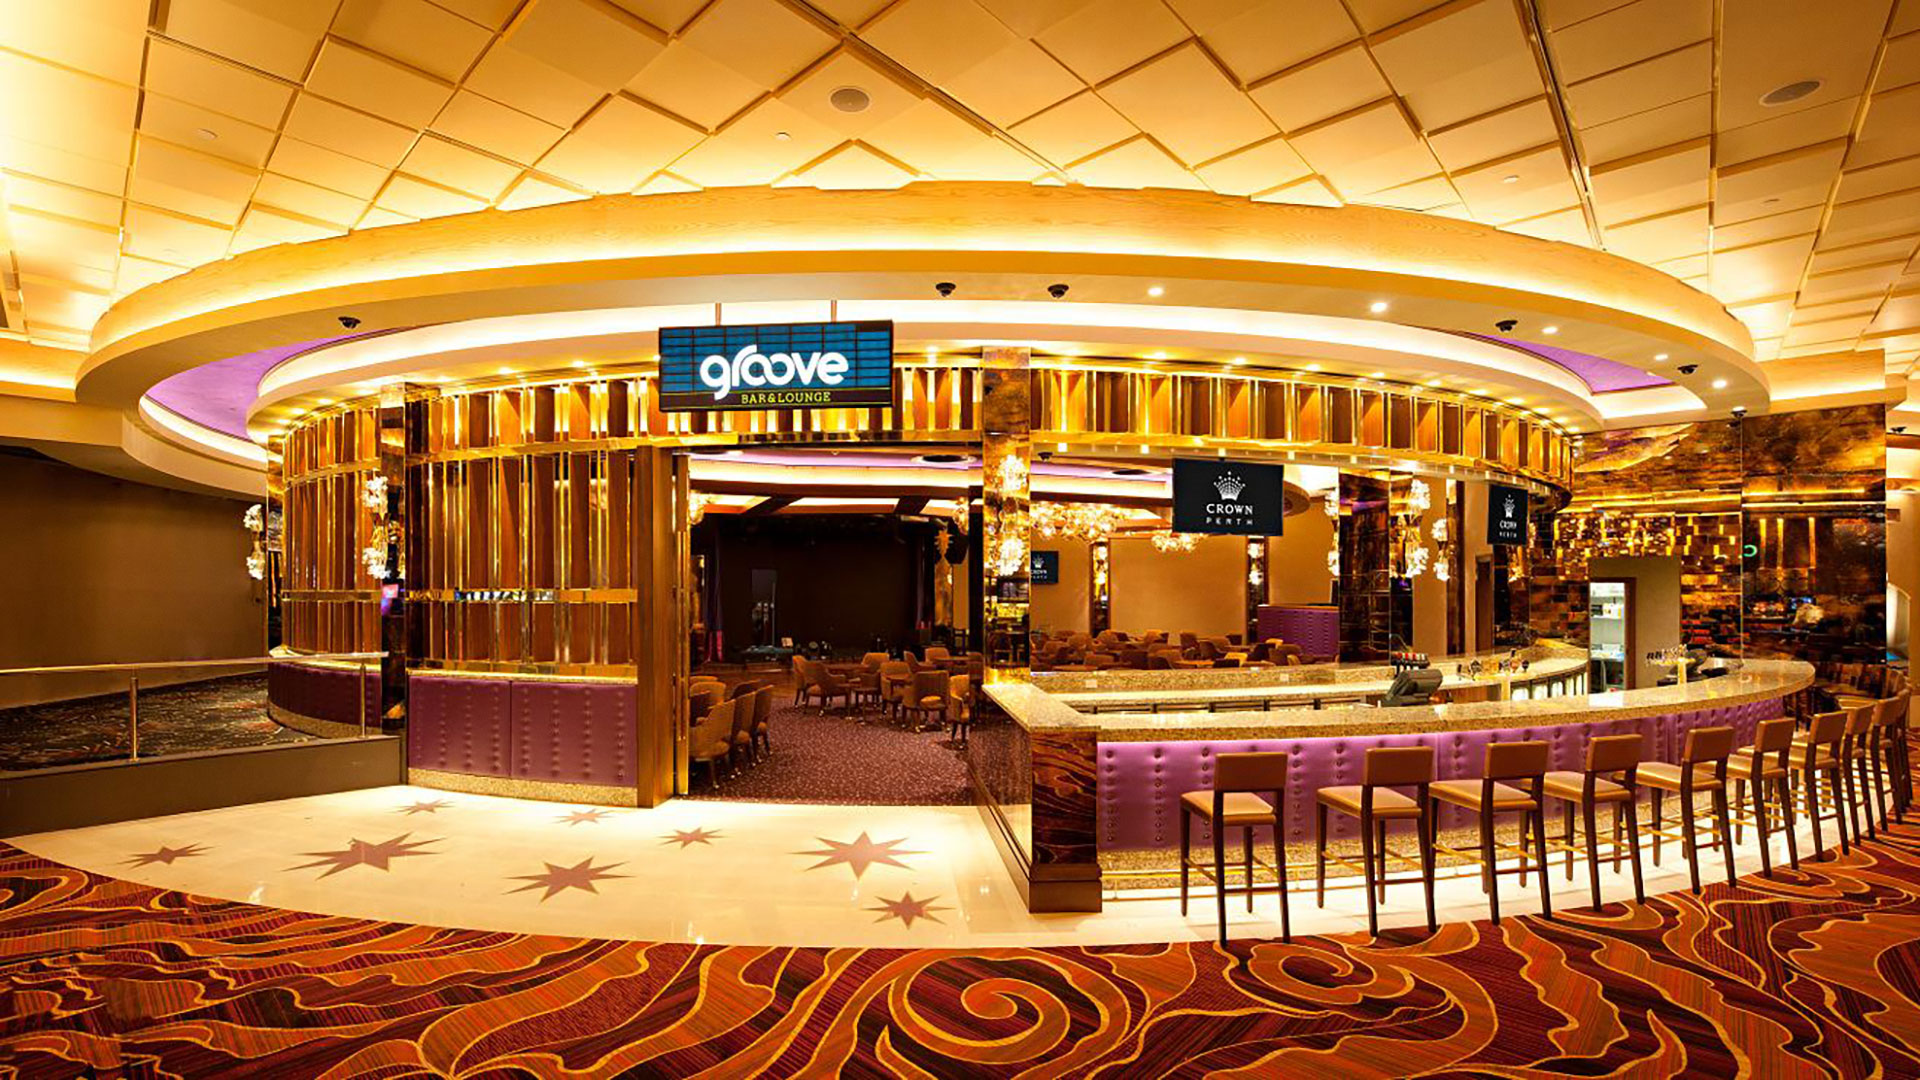 crown casino perth grand ballroom